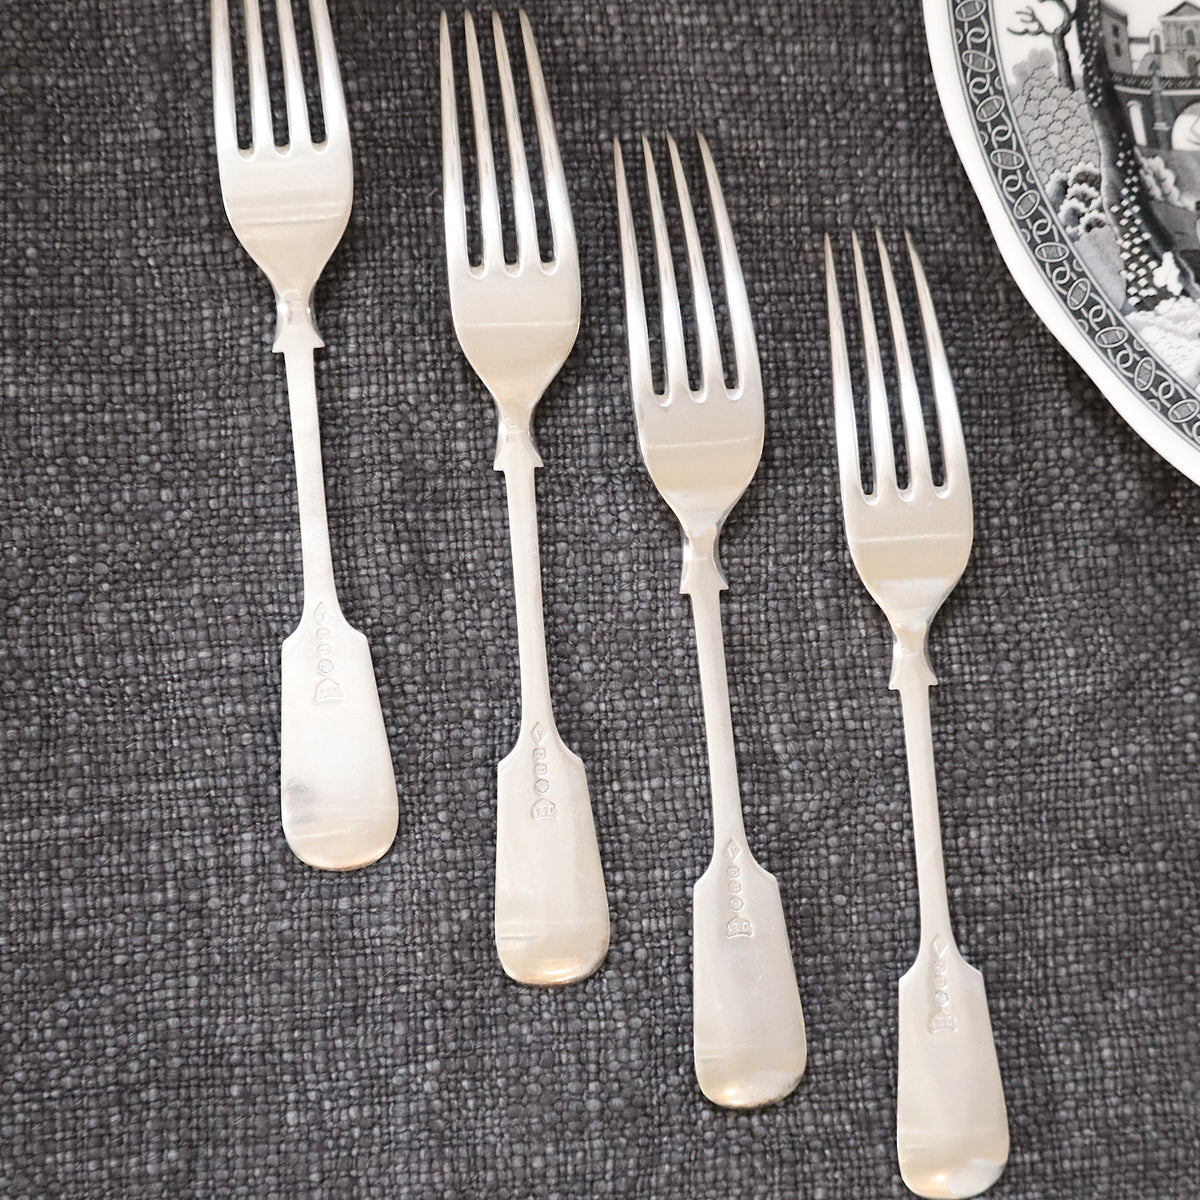 Antique set of 4 Forks